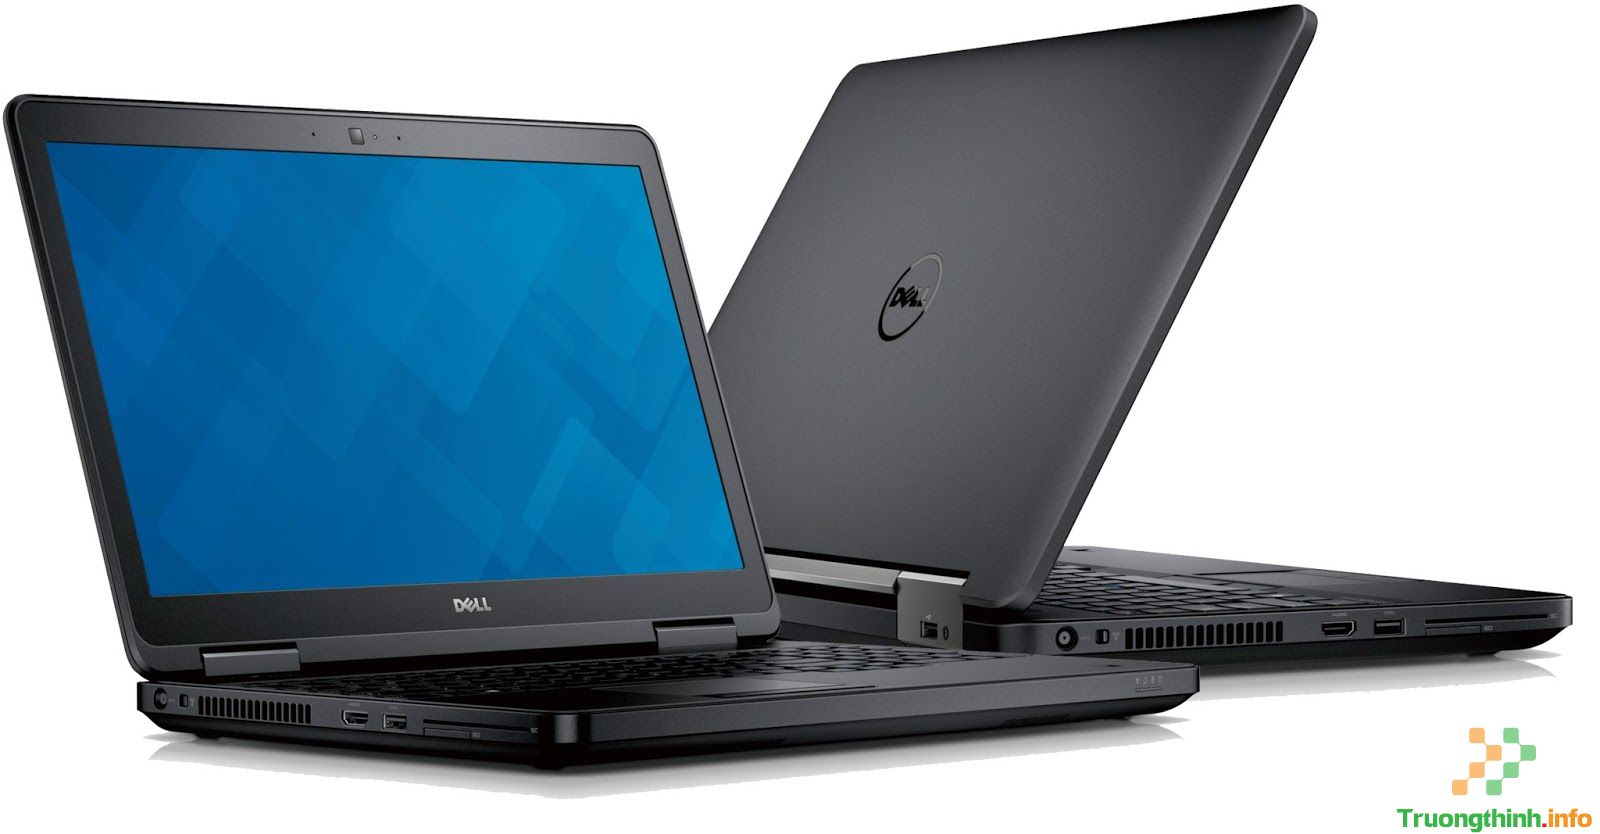  Mua bán Pin Laptop Dell Latitude 5540 Giá Rẻ | Vi Tính Trường Thịnh